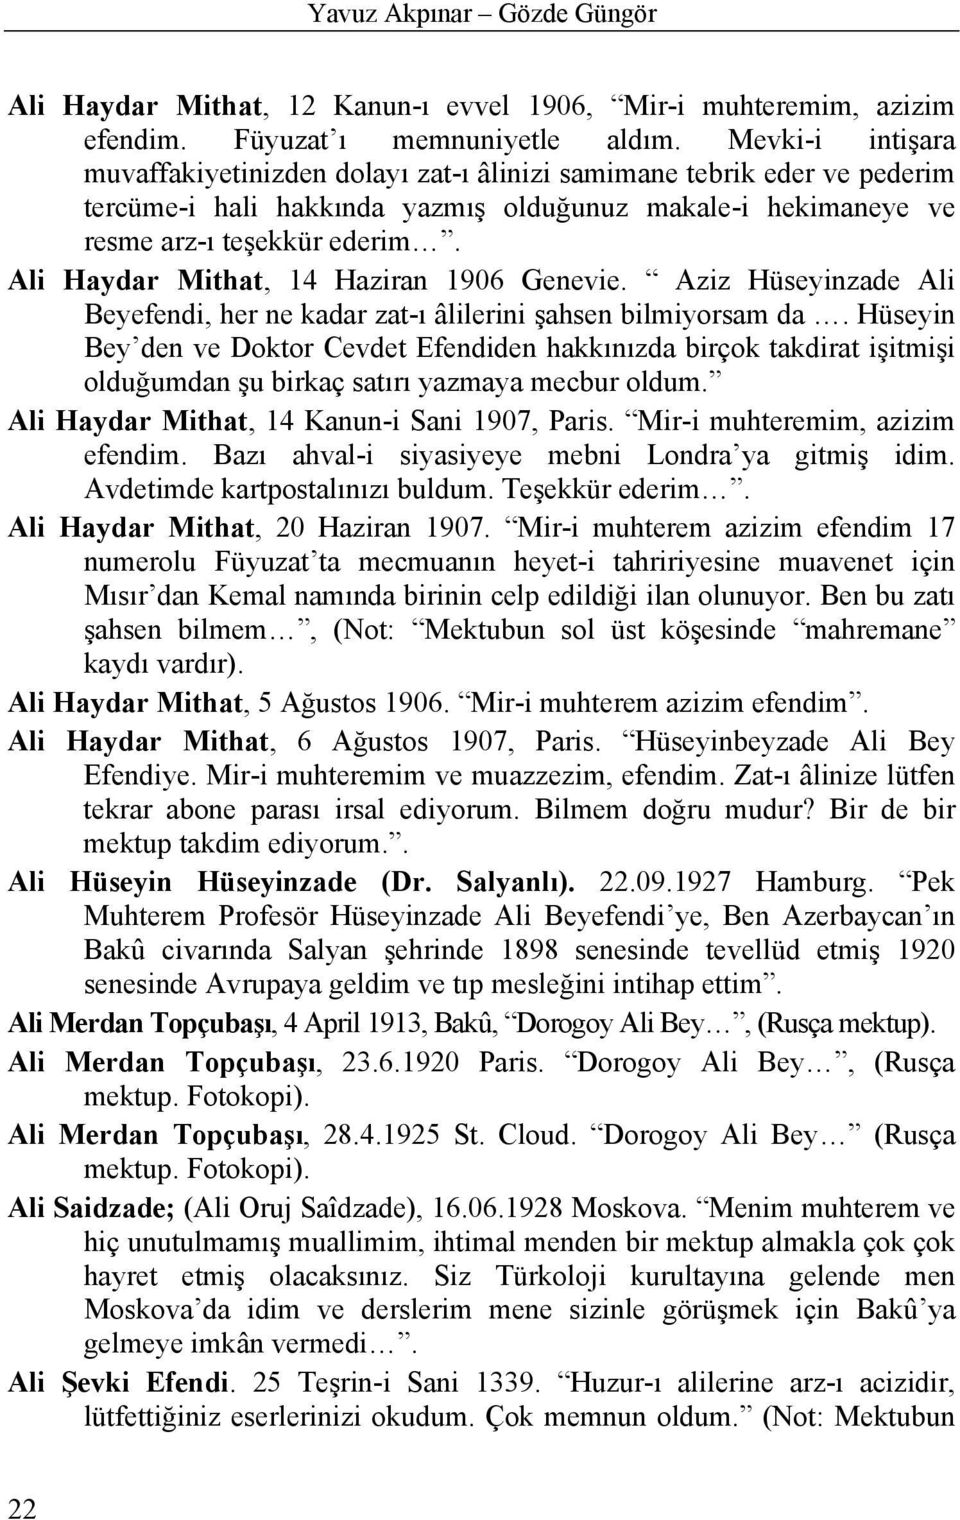 Ali Haydar Mithat, 14 Haziran 1906 Genevie. Aziz Hüseyinzade Ali Beyefendi, her ne kadar zat-ı âlilerini şahsen bilmiyorsam da.